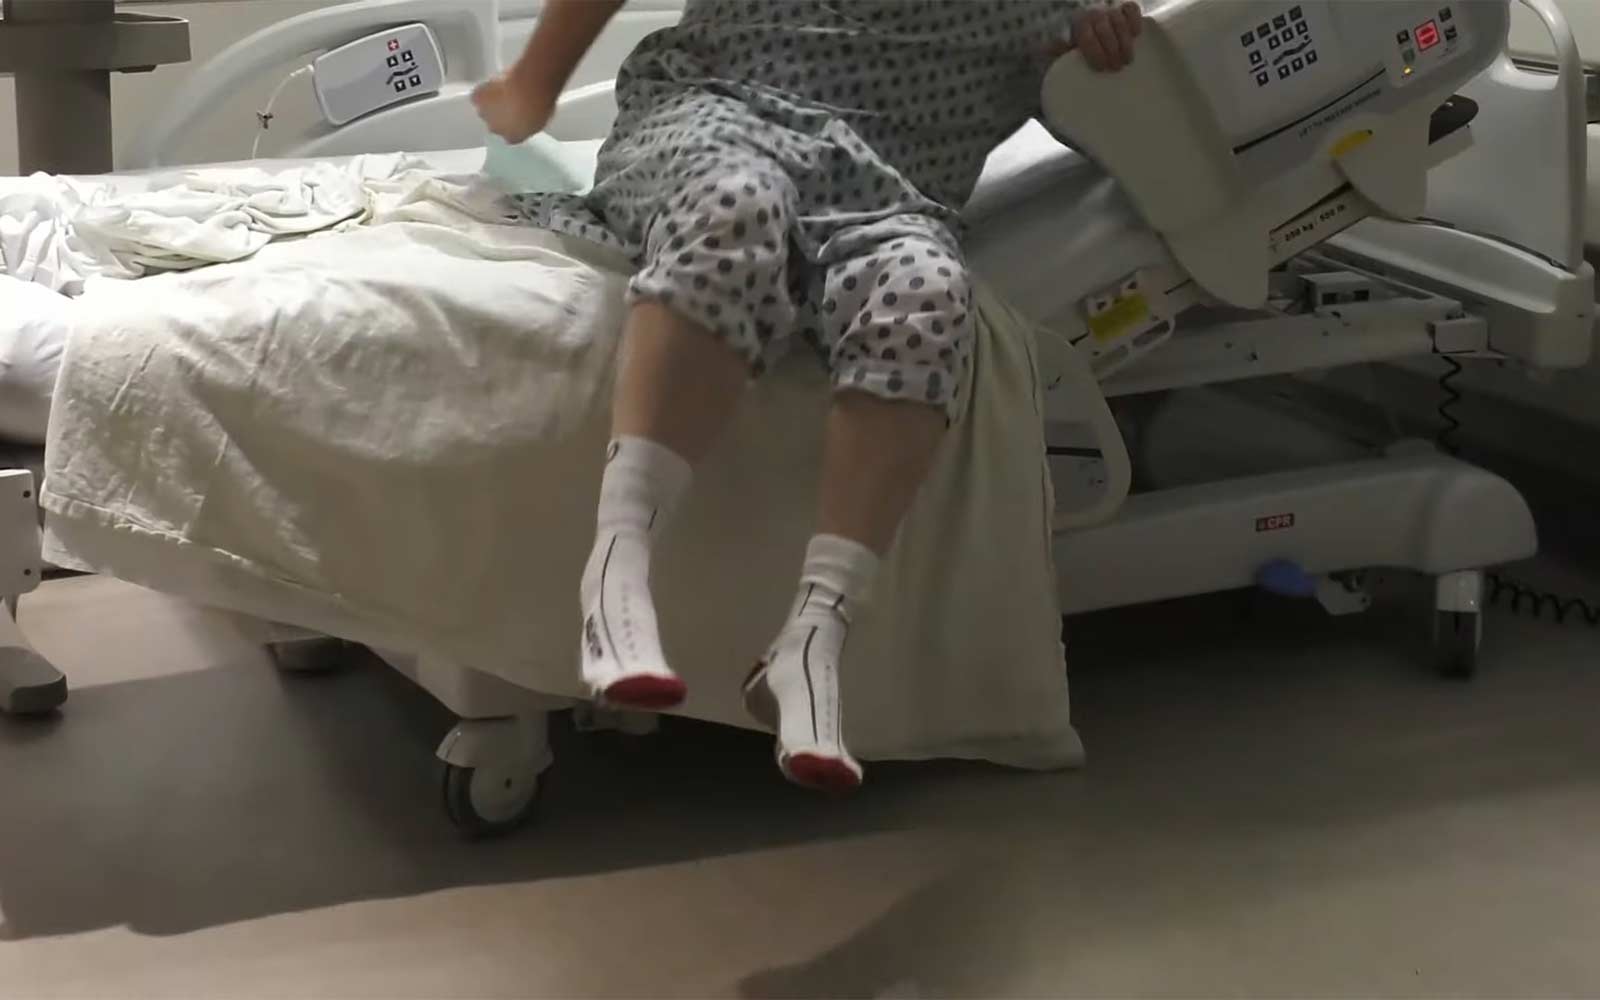 Smart Sock Fall Prevention Hospital Bed